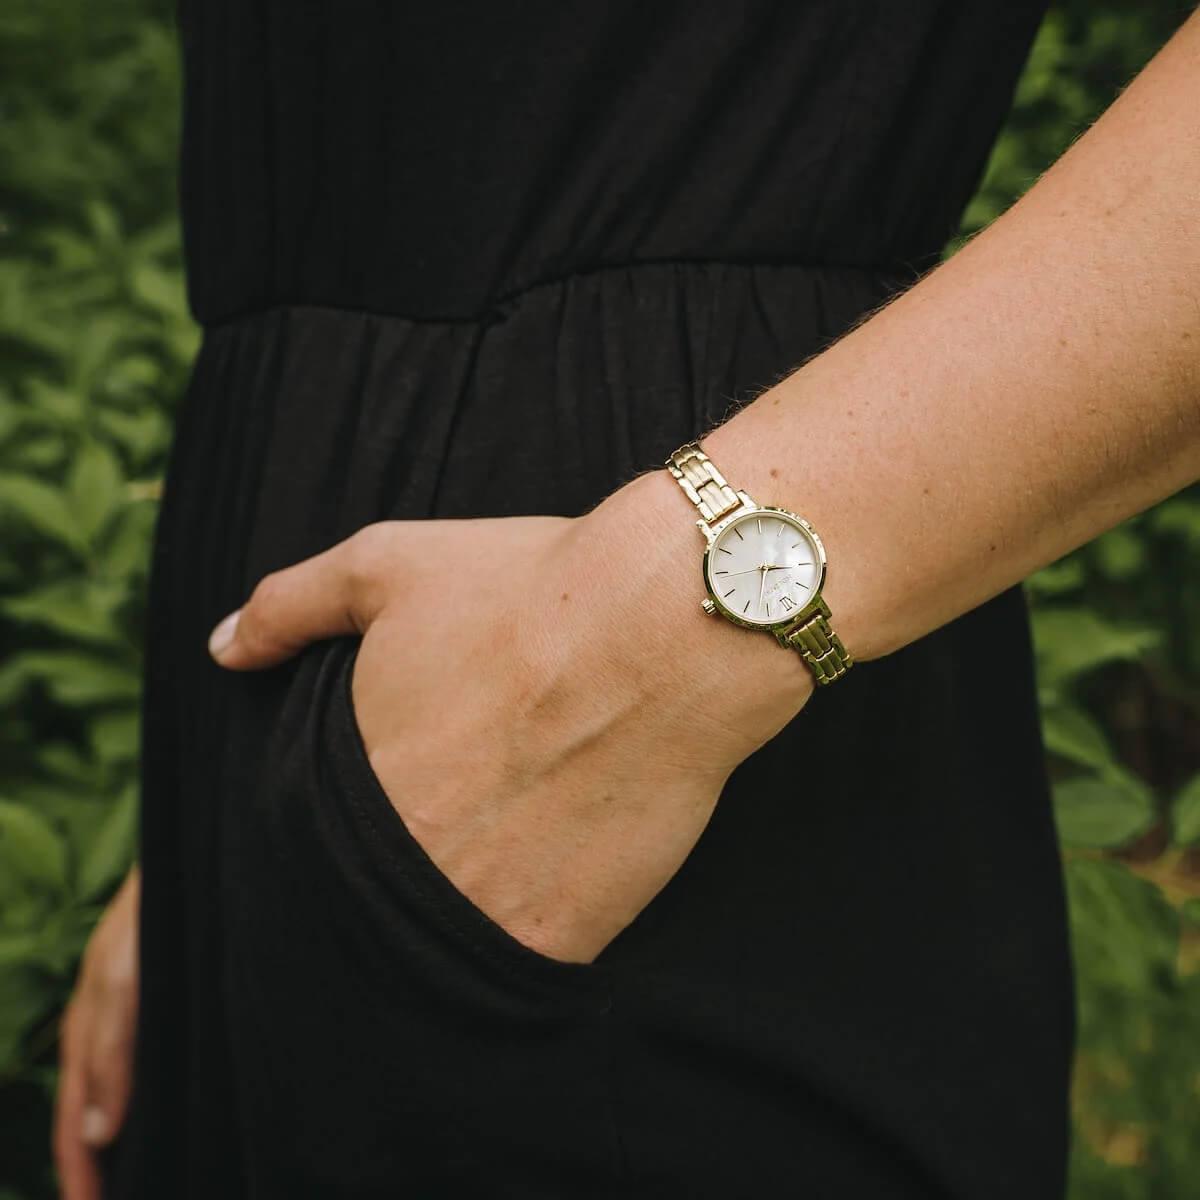 HOLZKERN | Hanwi Numinos Damen Armbanduhr